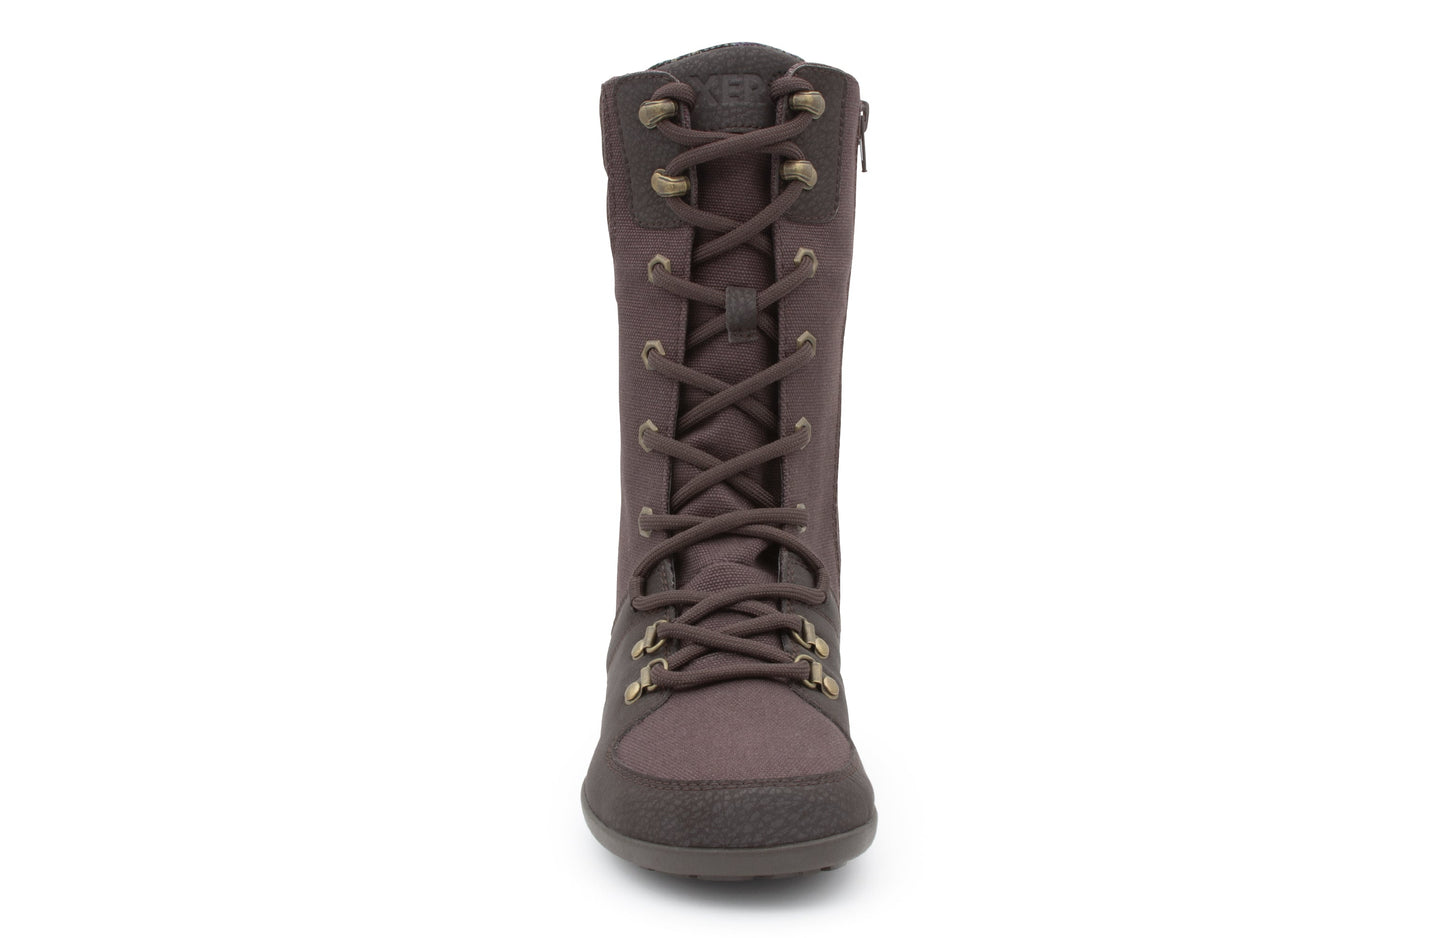 Xero Shoes Mika barfods vinterstøvler til kvinder i farven chocolate plum, forfra